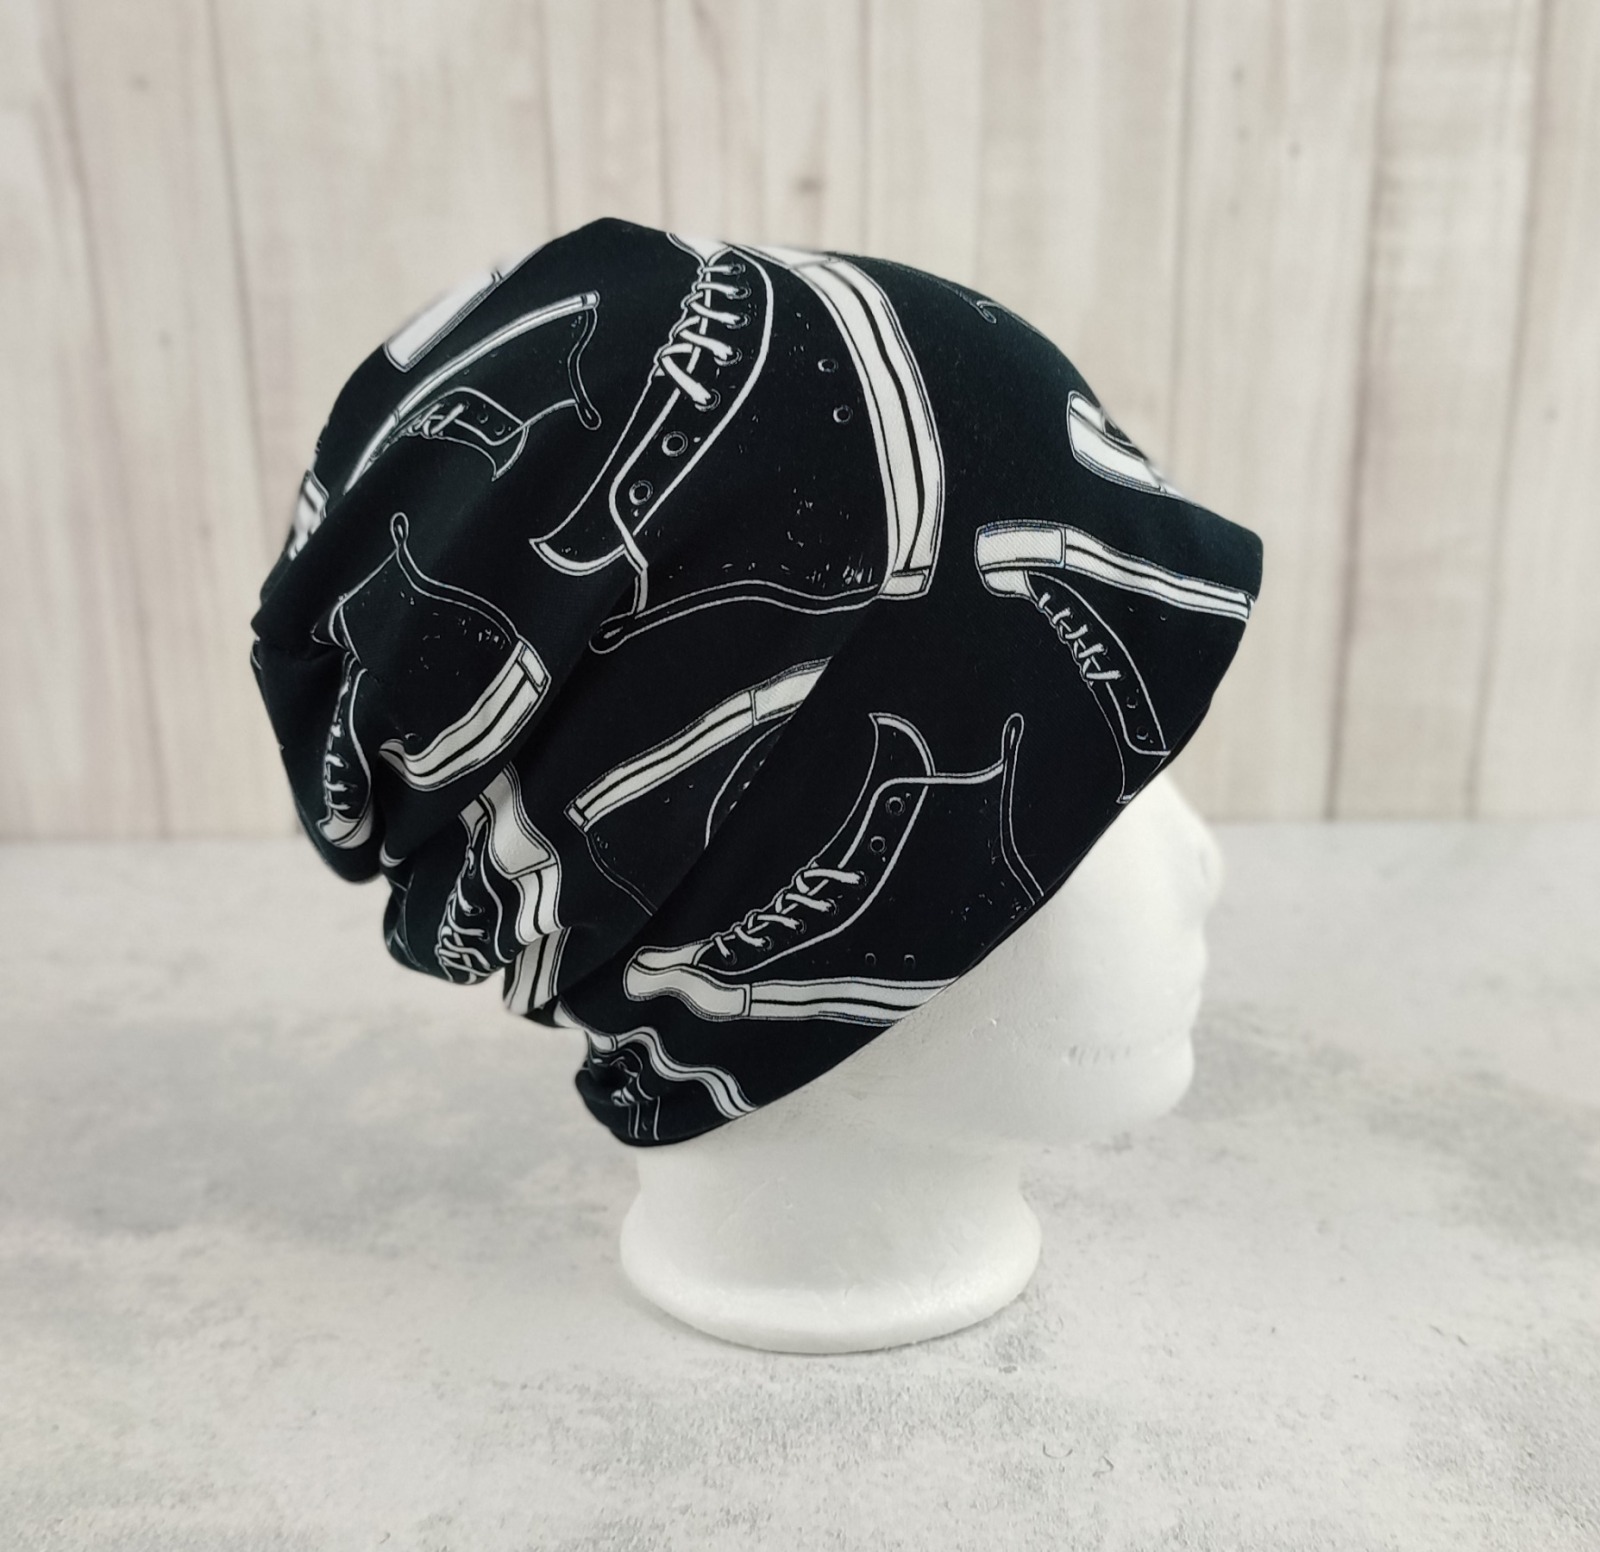 Beanie Turnschuhe - coole Mütze für Kinder in schwarz - weiß, Größe ca. 48 - 54 cm Kopfumfang